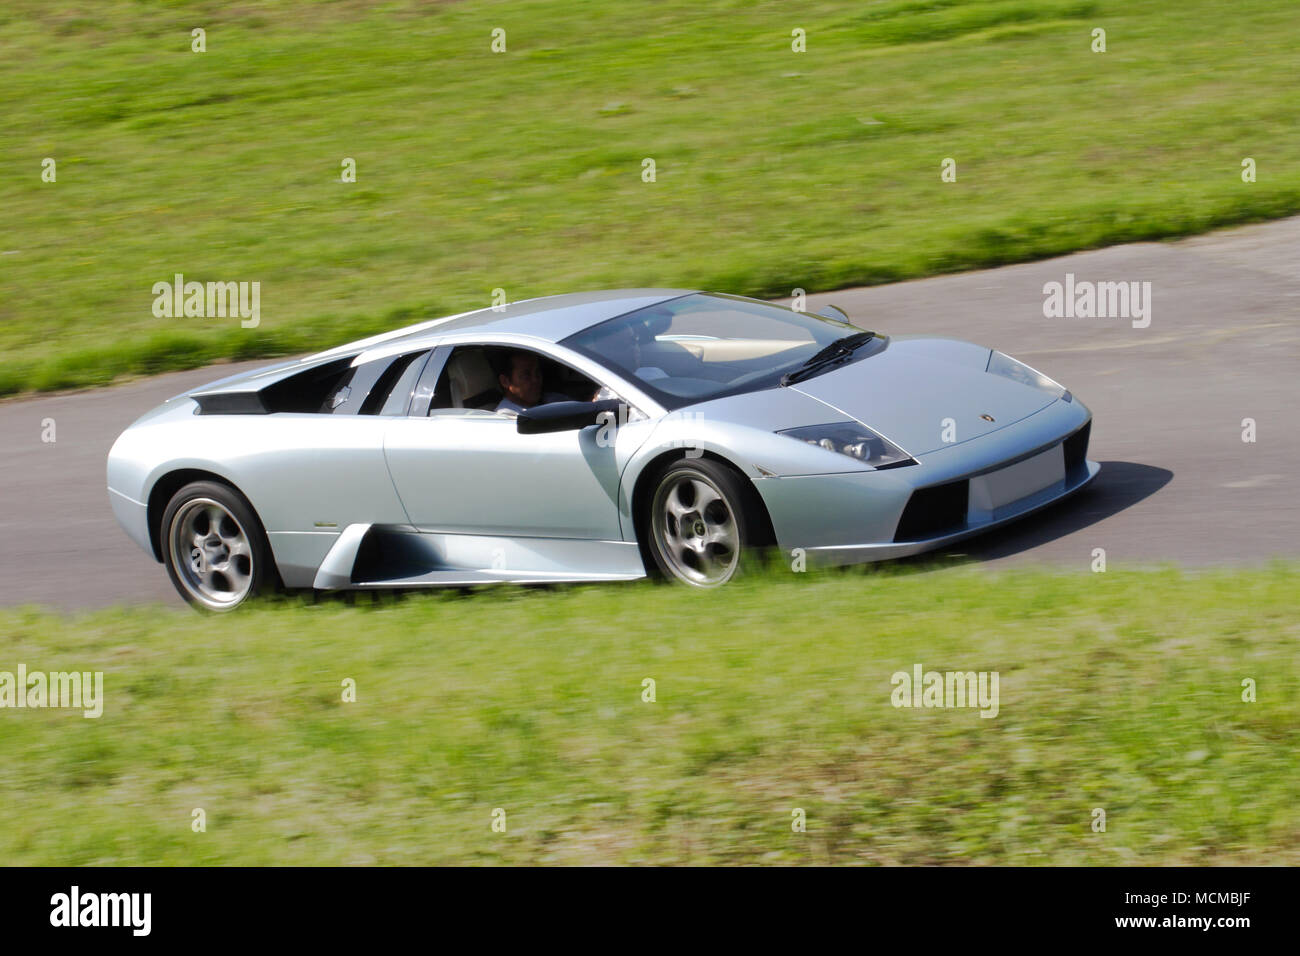 Lamborghini Murcielago argent supercar hypercar conduite rapide. Banque D'Images